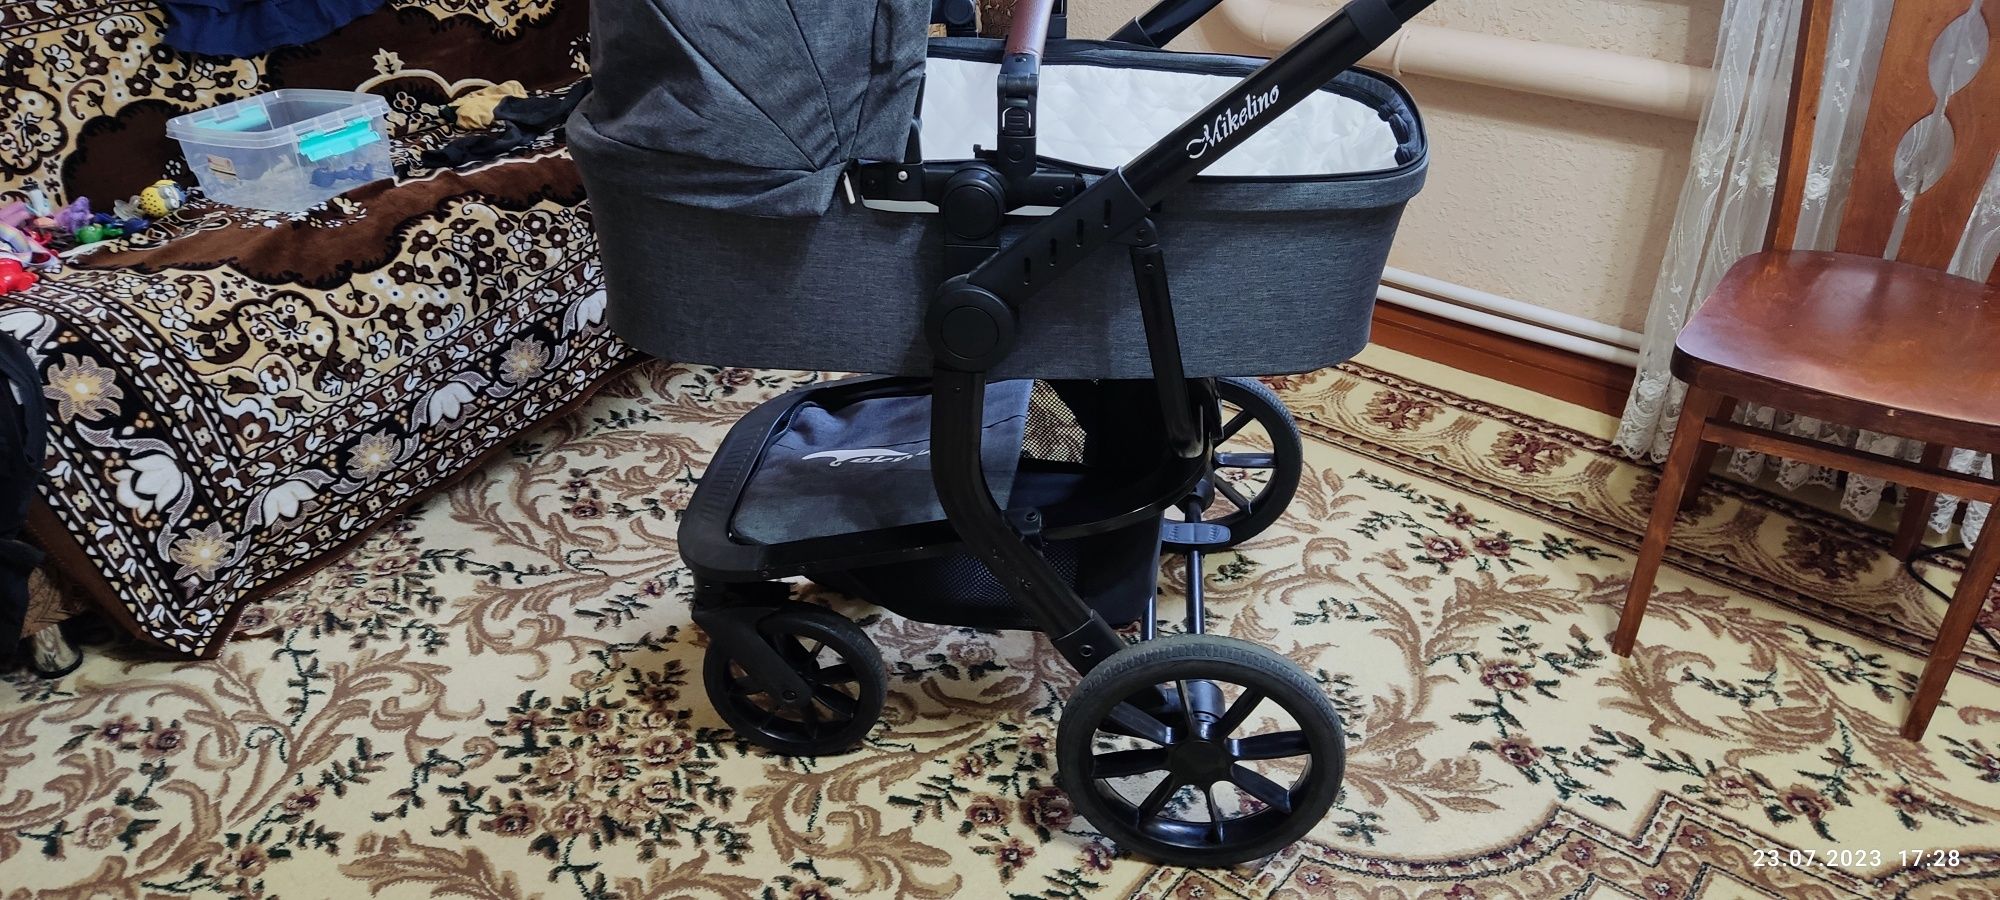 Детская коляска со съемными колесами.